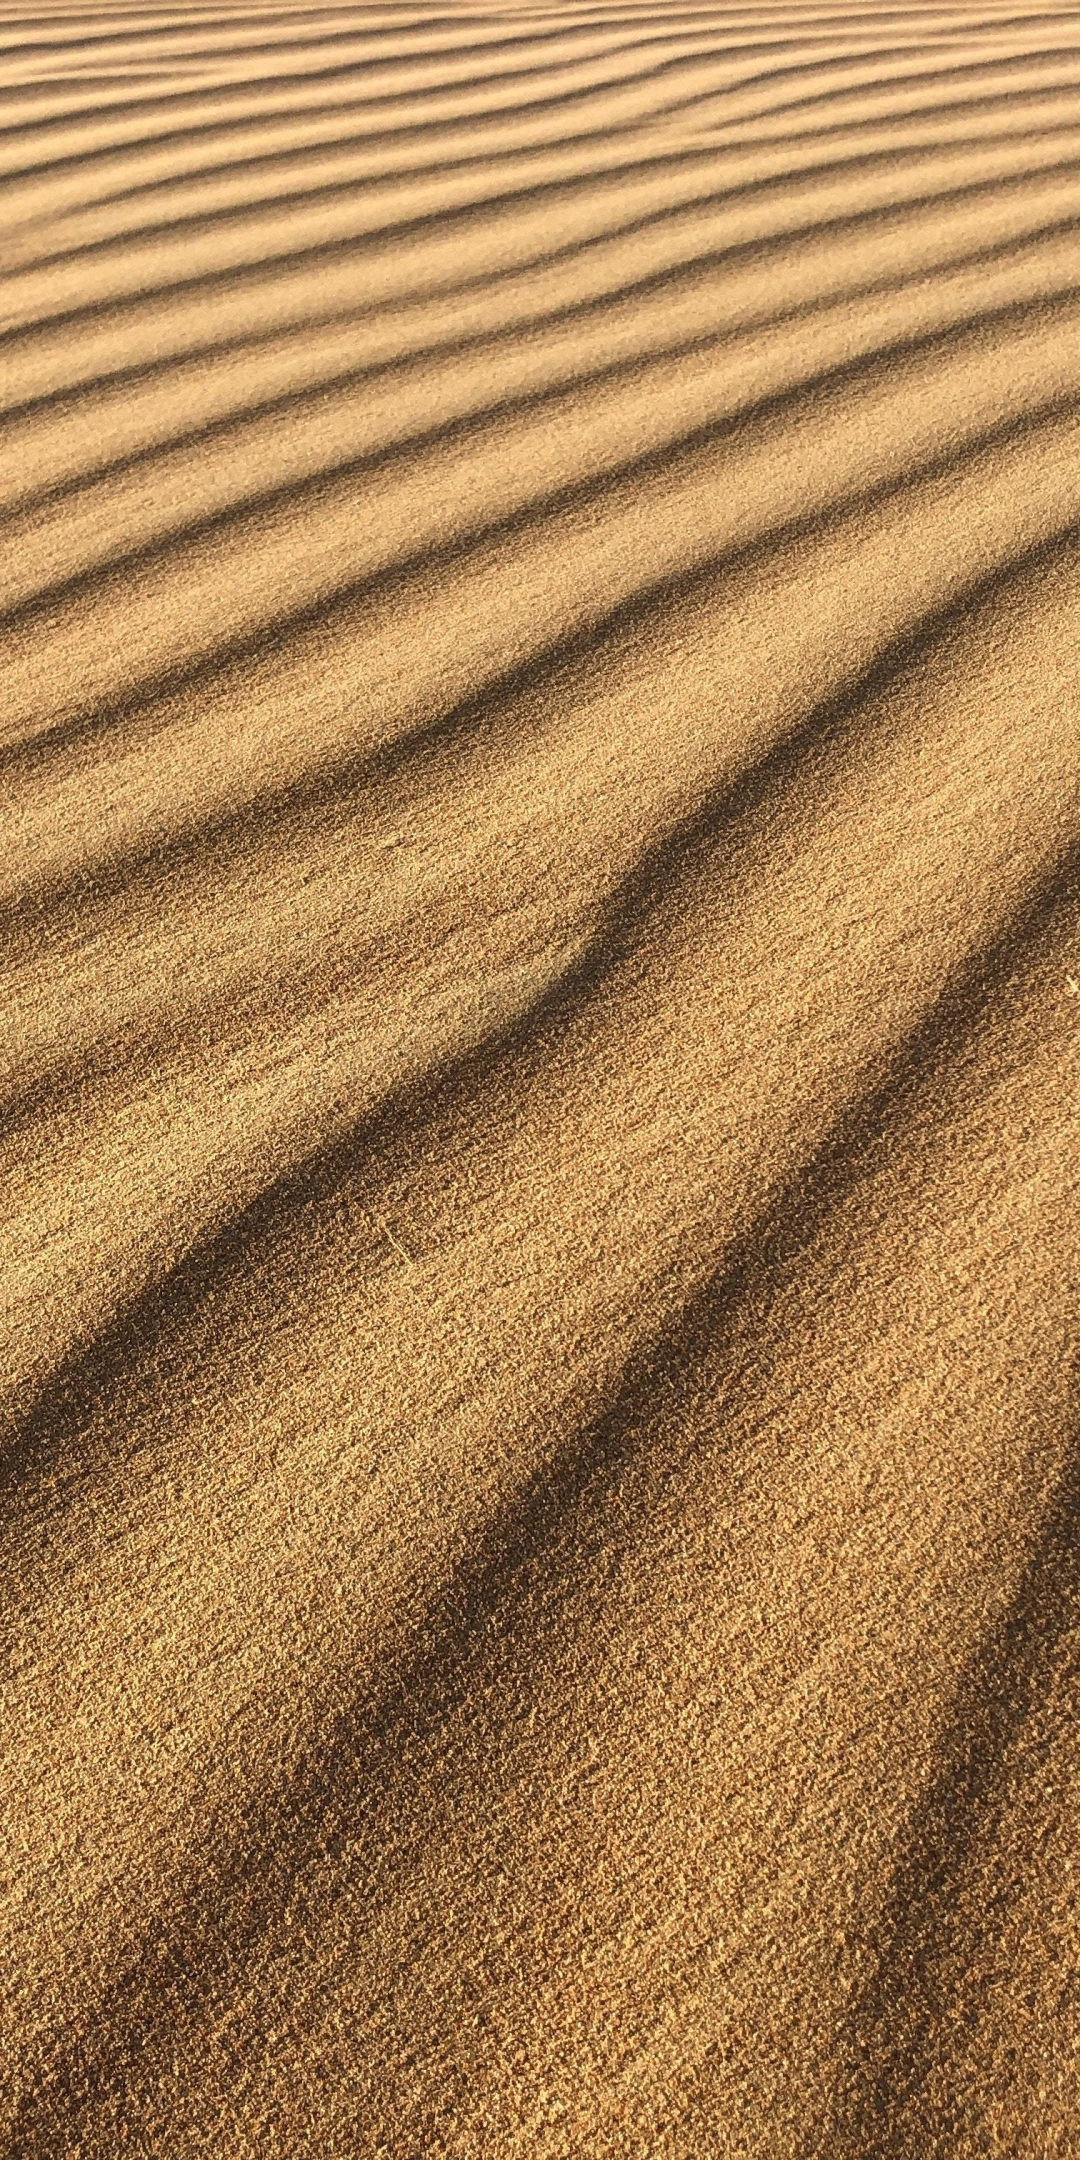 Sand, desert, texture, 1080x2160 wallpaper